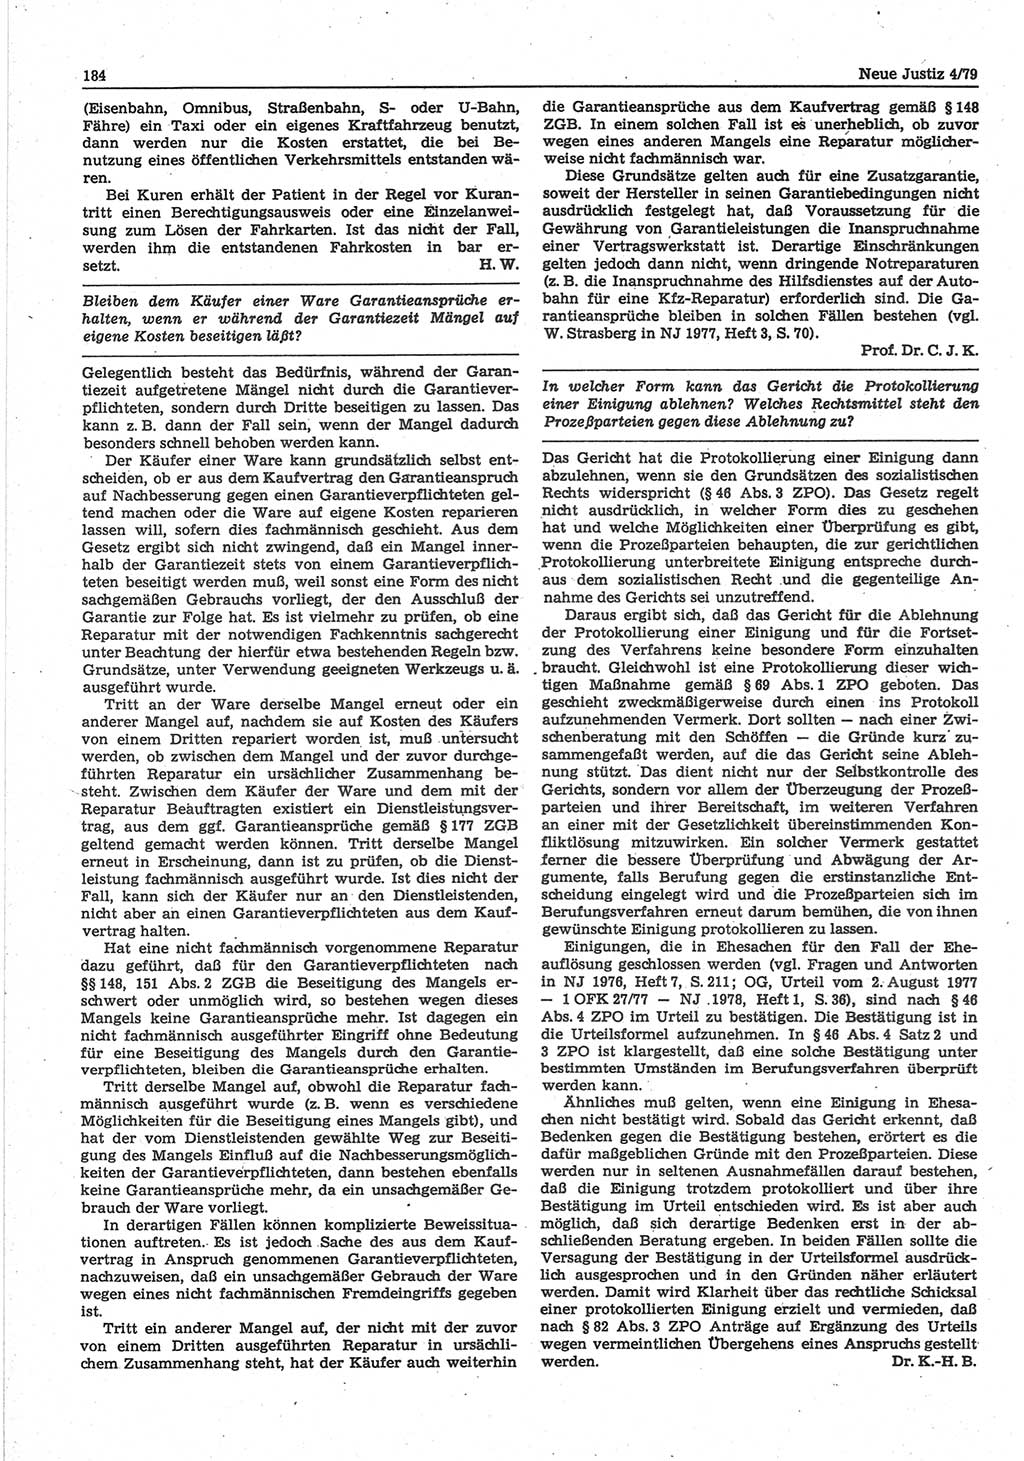 Neue Justiz (NJ), Zeitschrift für sozialistisches Recht und Gesetzlichkeit [Deutsche Demokratische Republik (DDR)], 33. Jahrgang 1979, Seite 184 (NJ DDR 1979, S. 184)